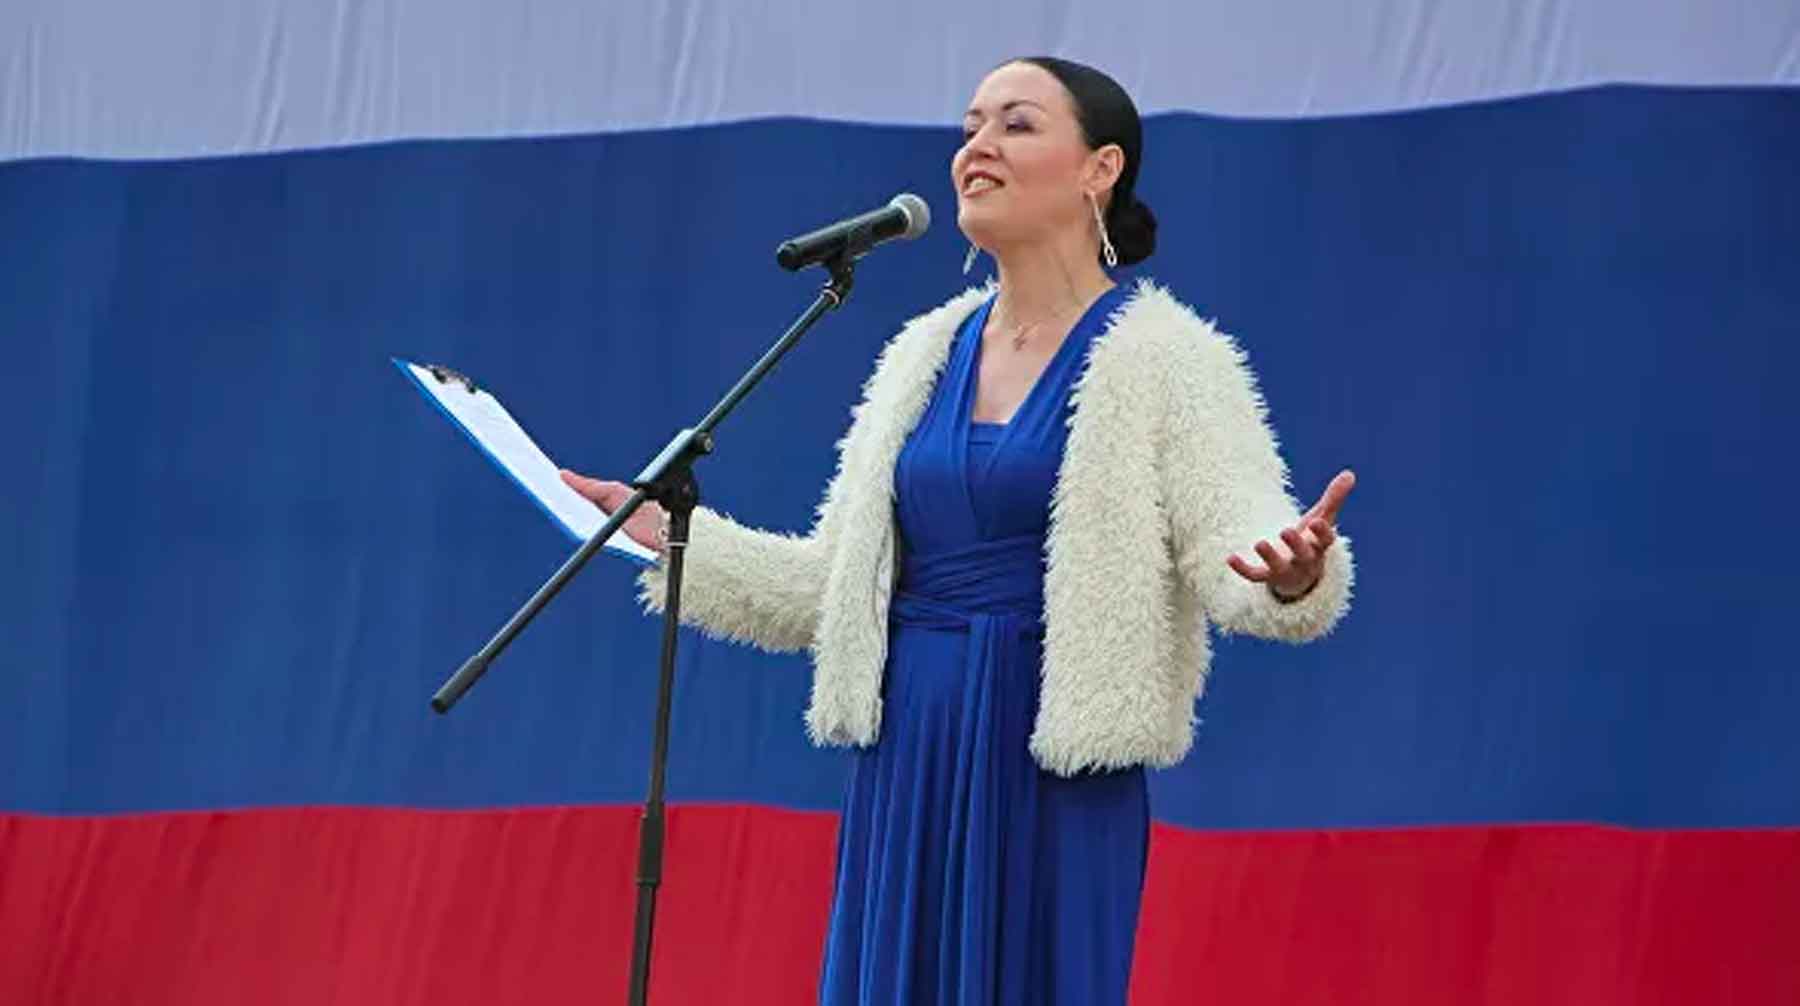 Глава управления культуры Петрозаводска раскритиковала горожан за то, что они «не донесли мусор до помойки» Анна Лесонен